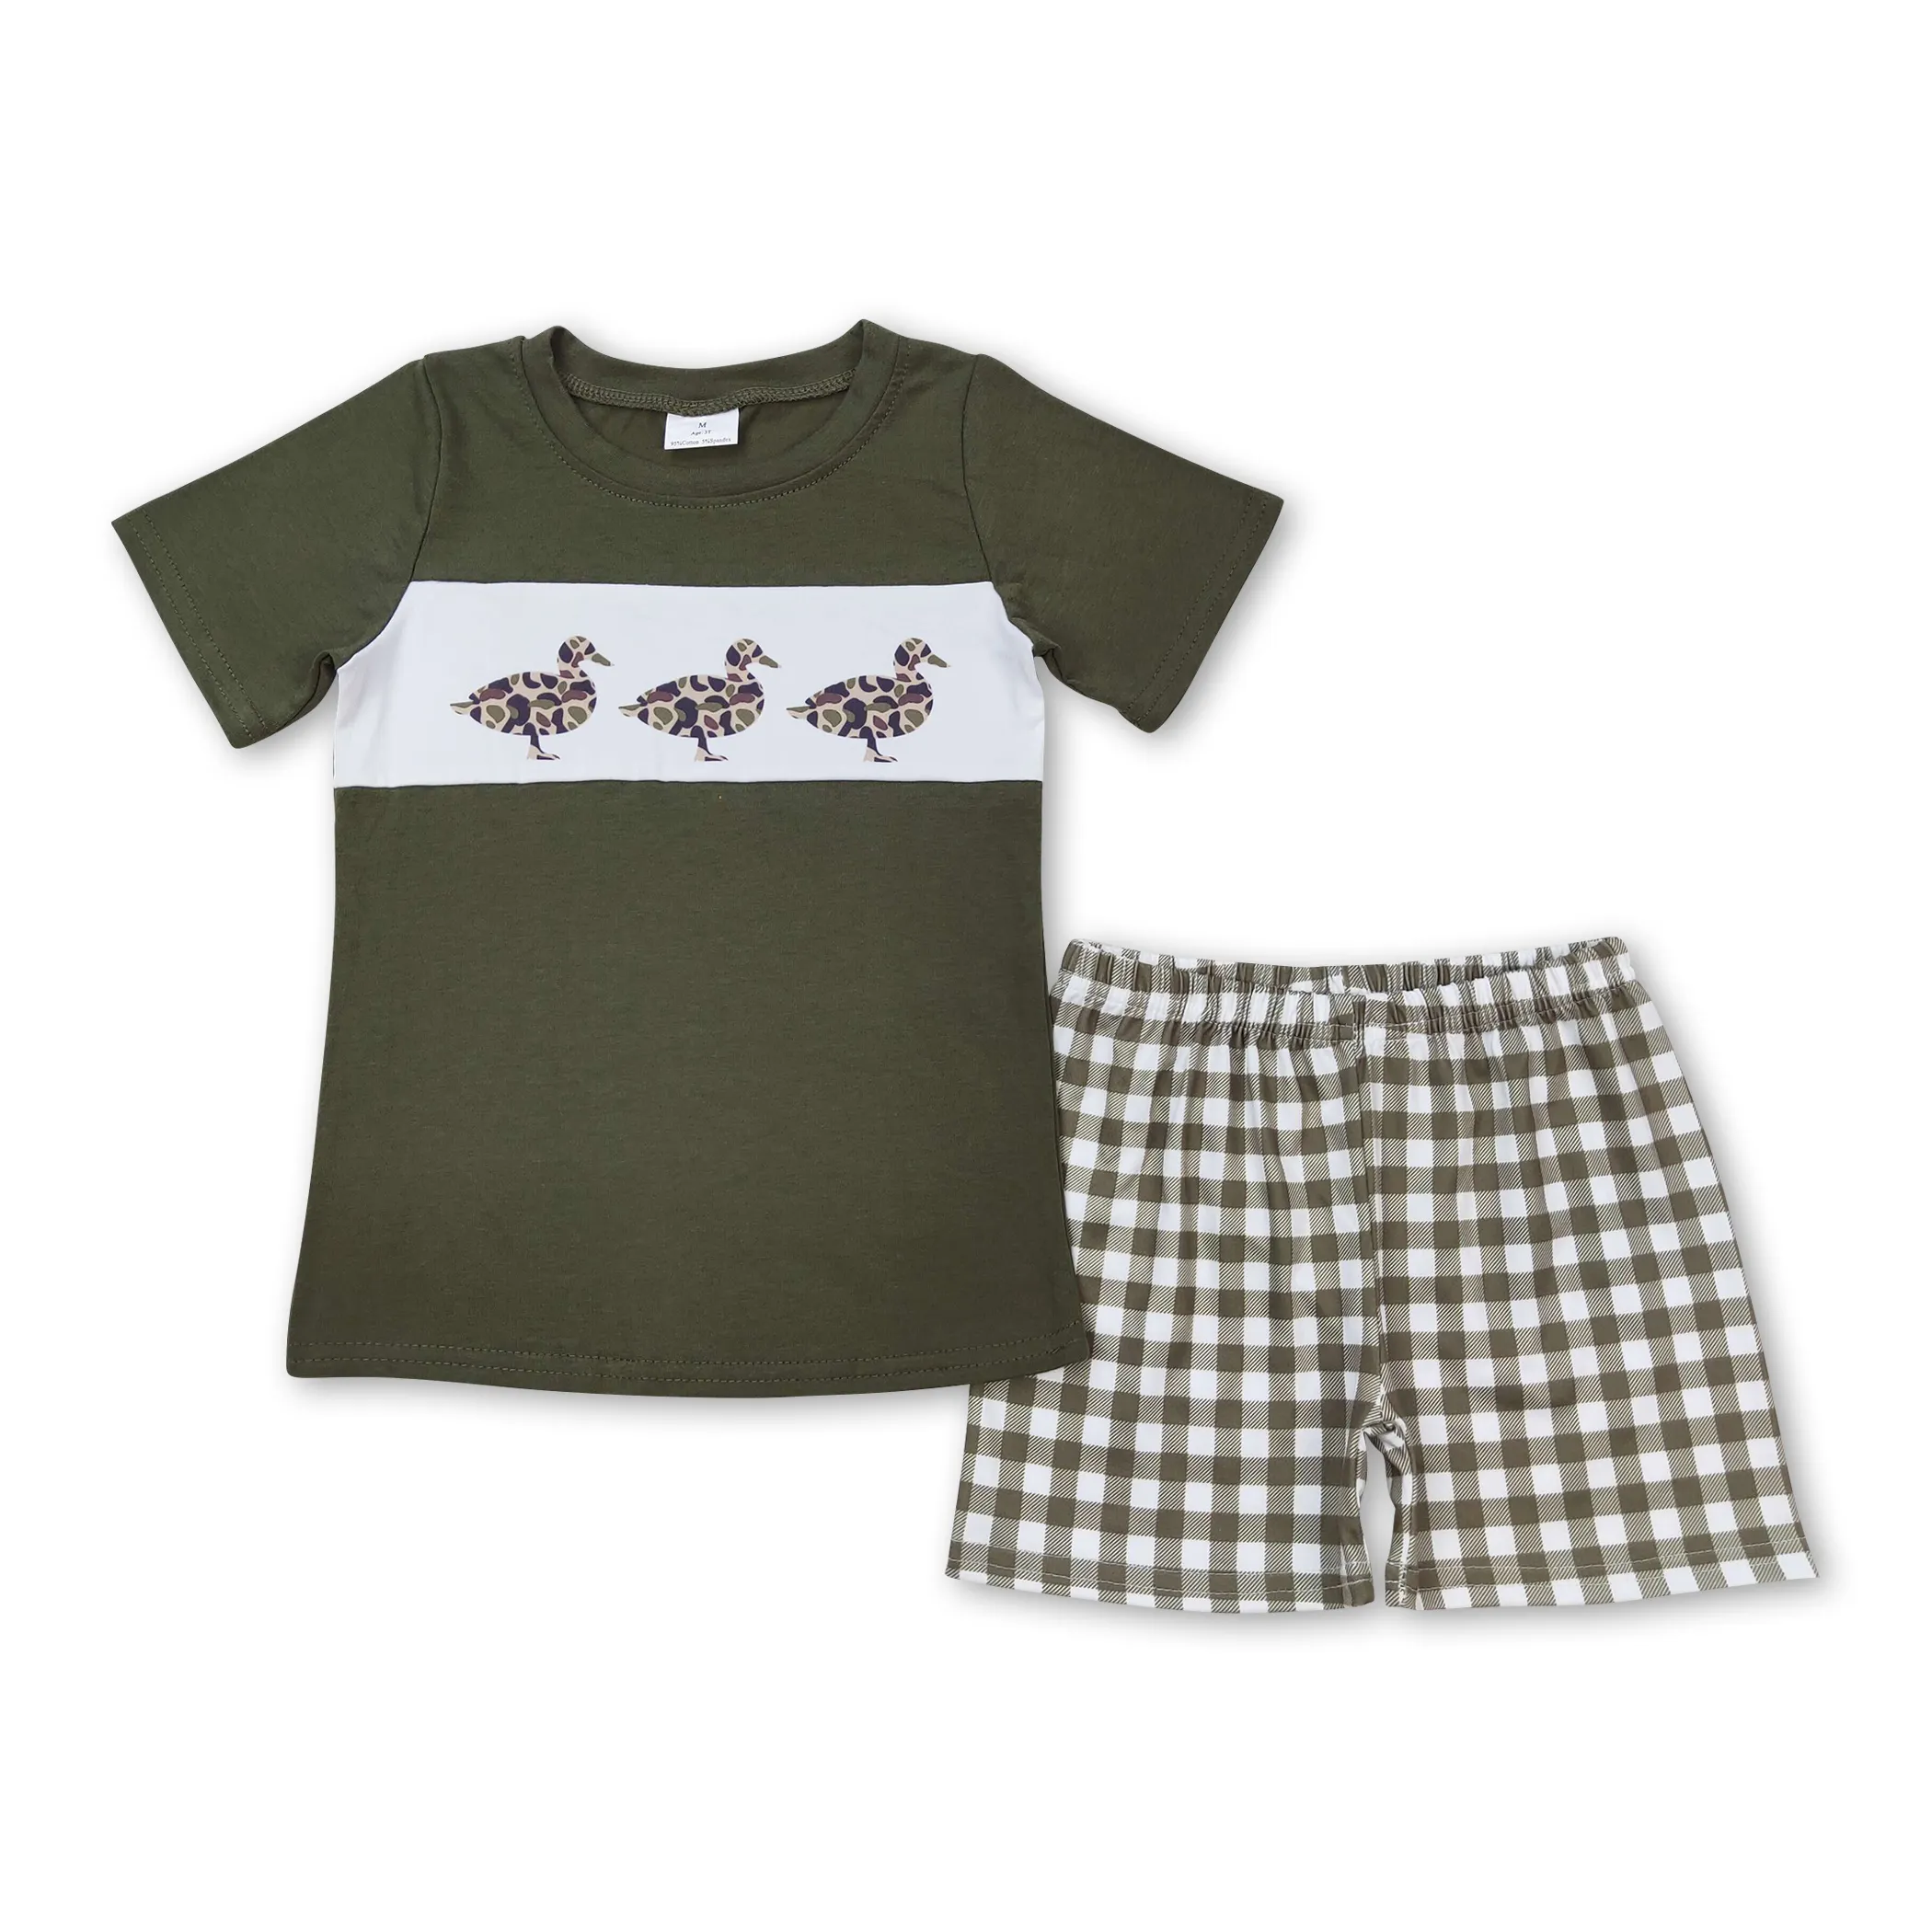 BSSO0663 Kinder Sommer Kurzarm individueller Entendruck grün Kurzarm-Top neue T-Shirts für Kinder